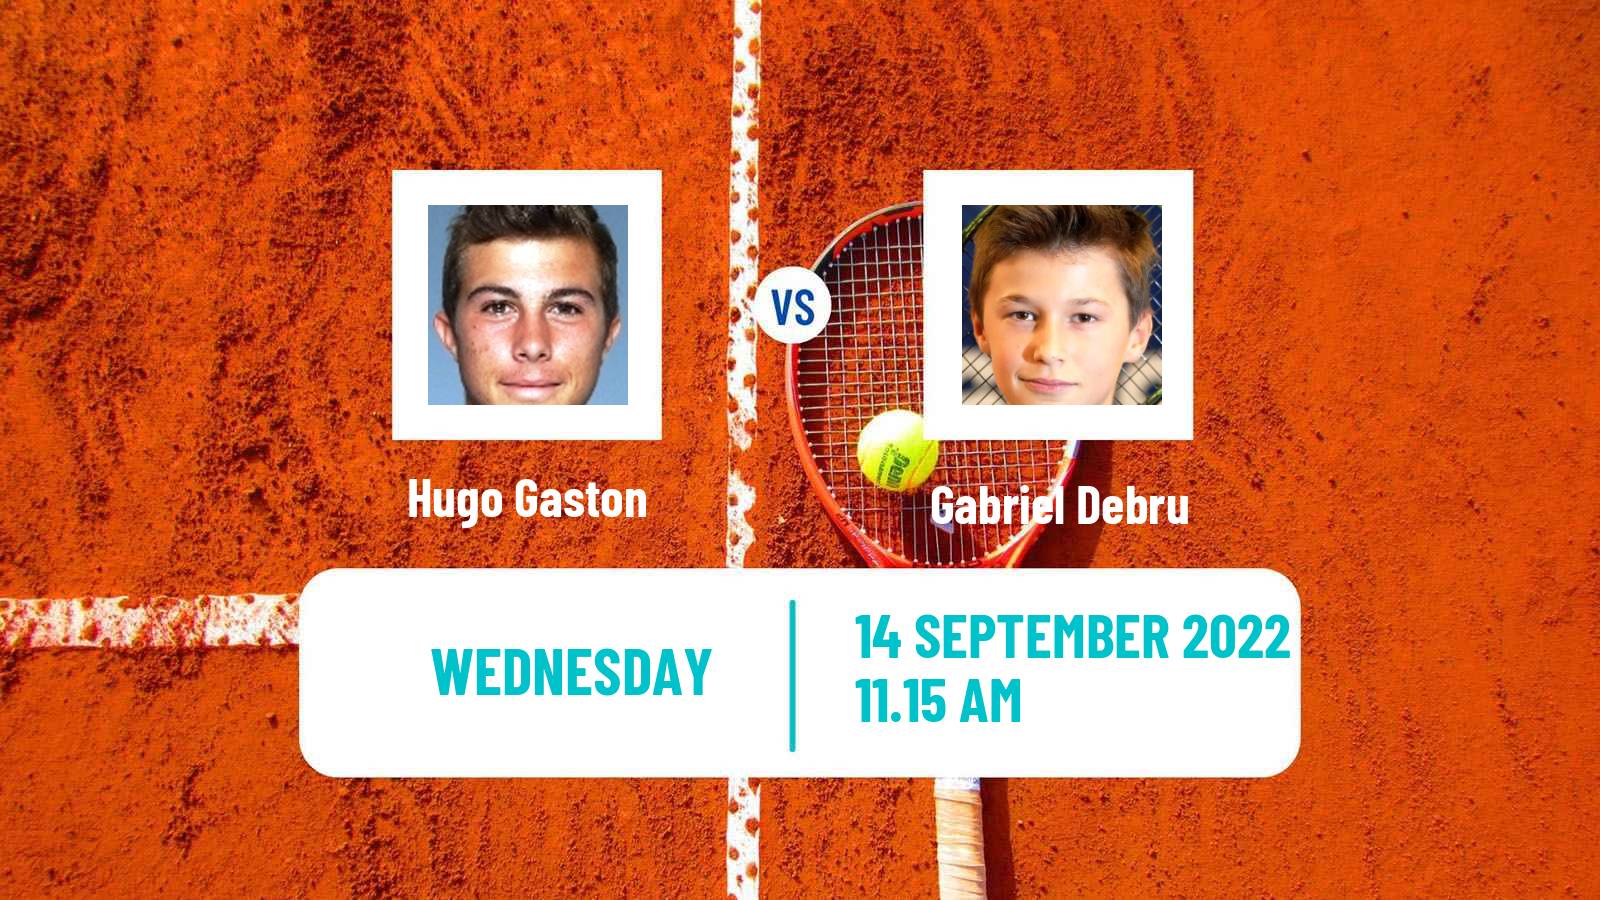 Tennis ATP Challenger Hugo Gaston - Gabriel Debru